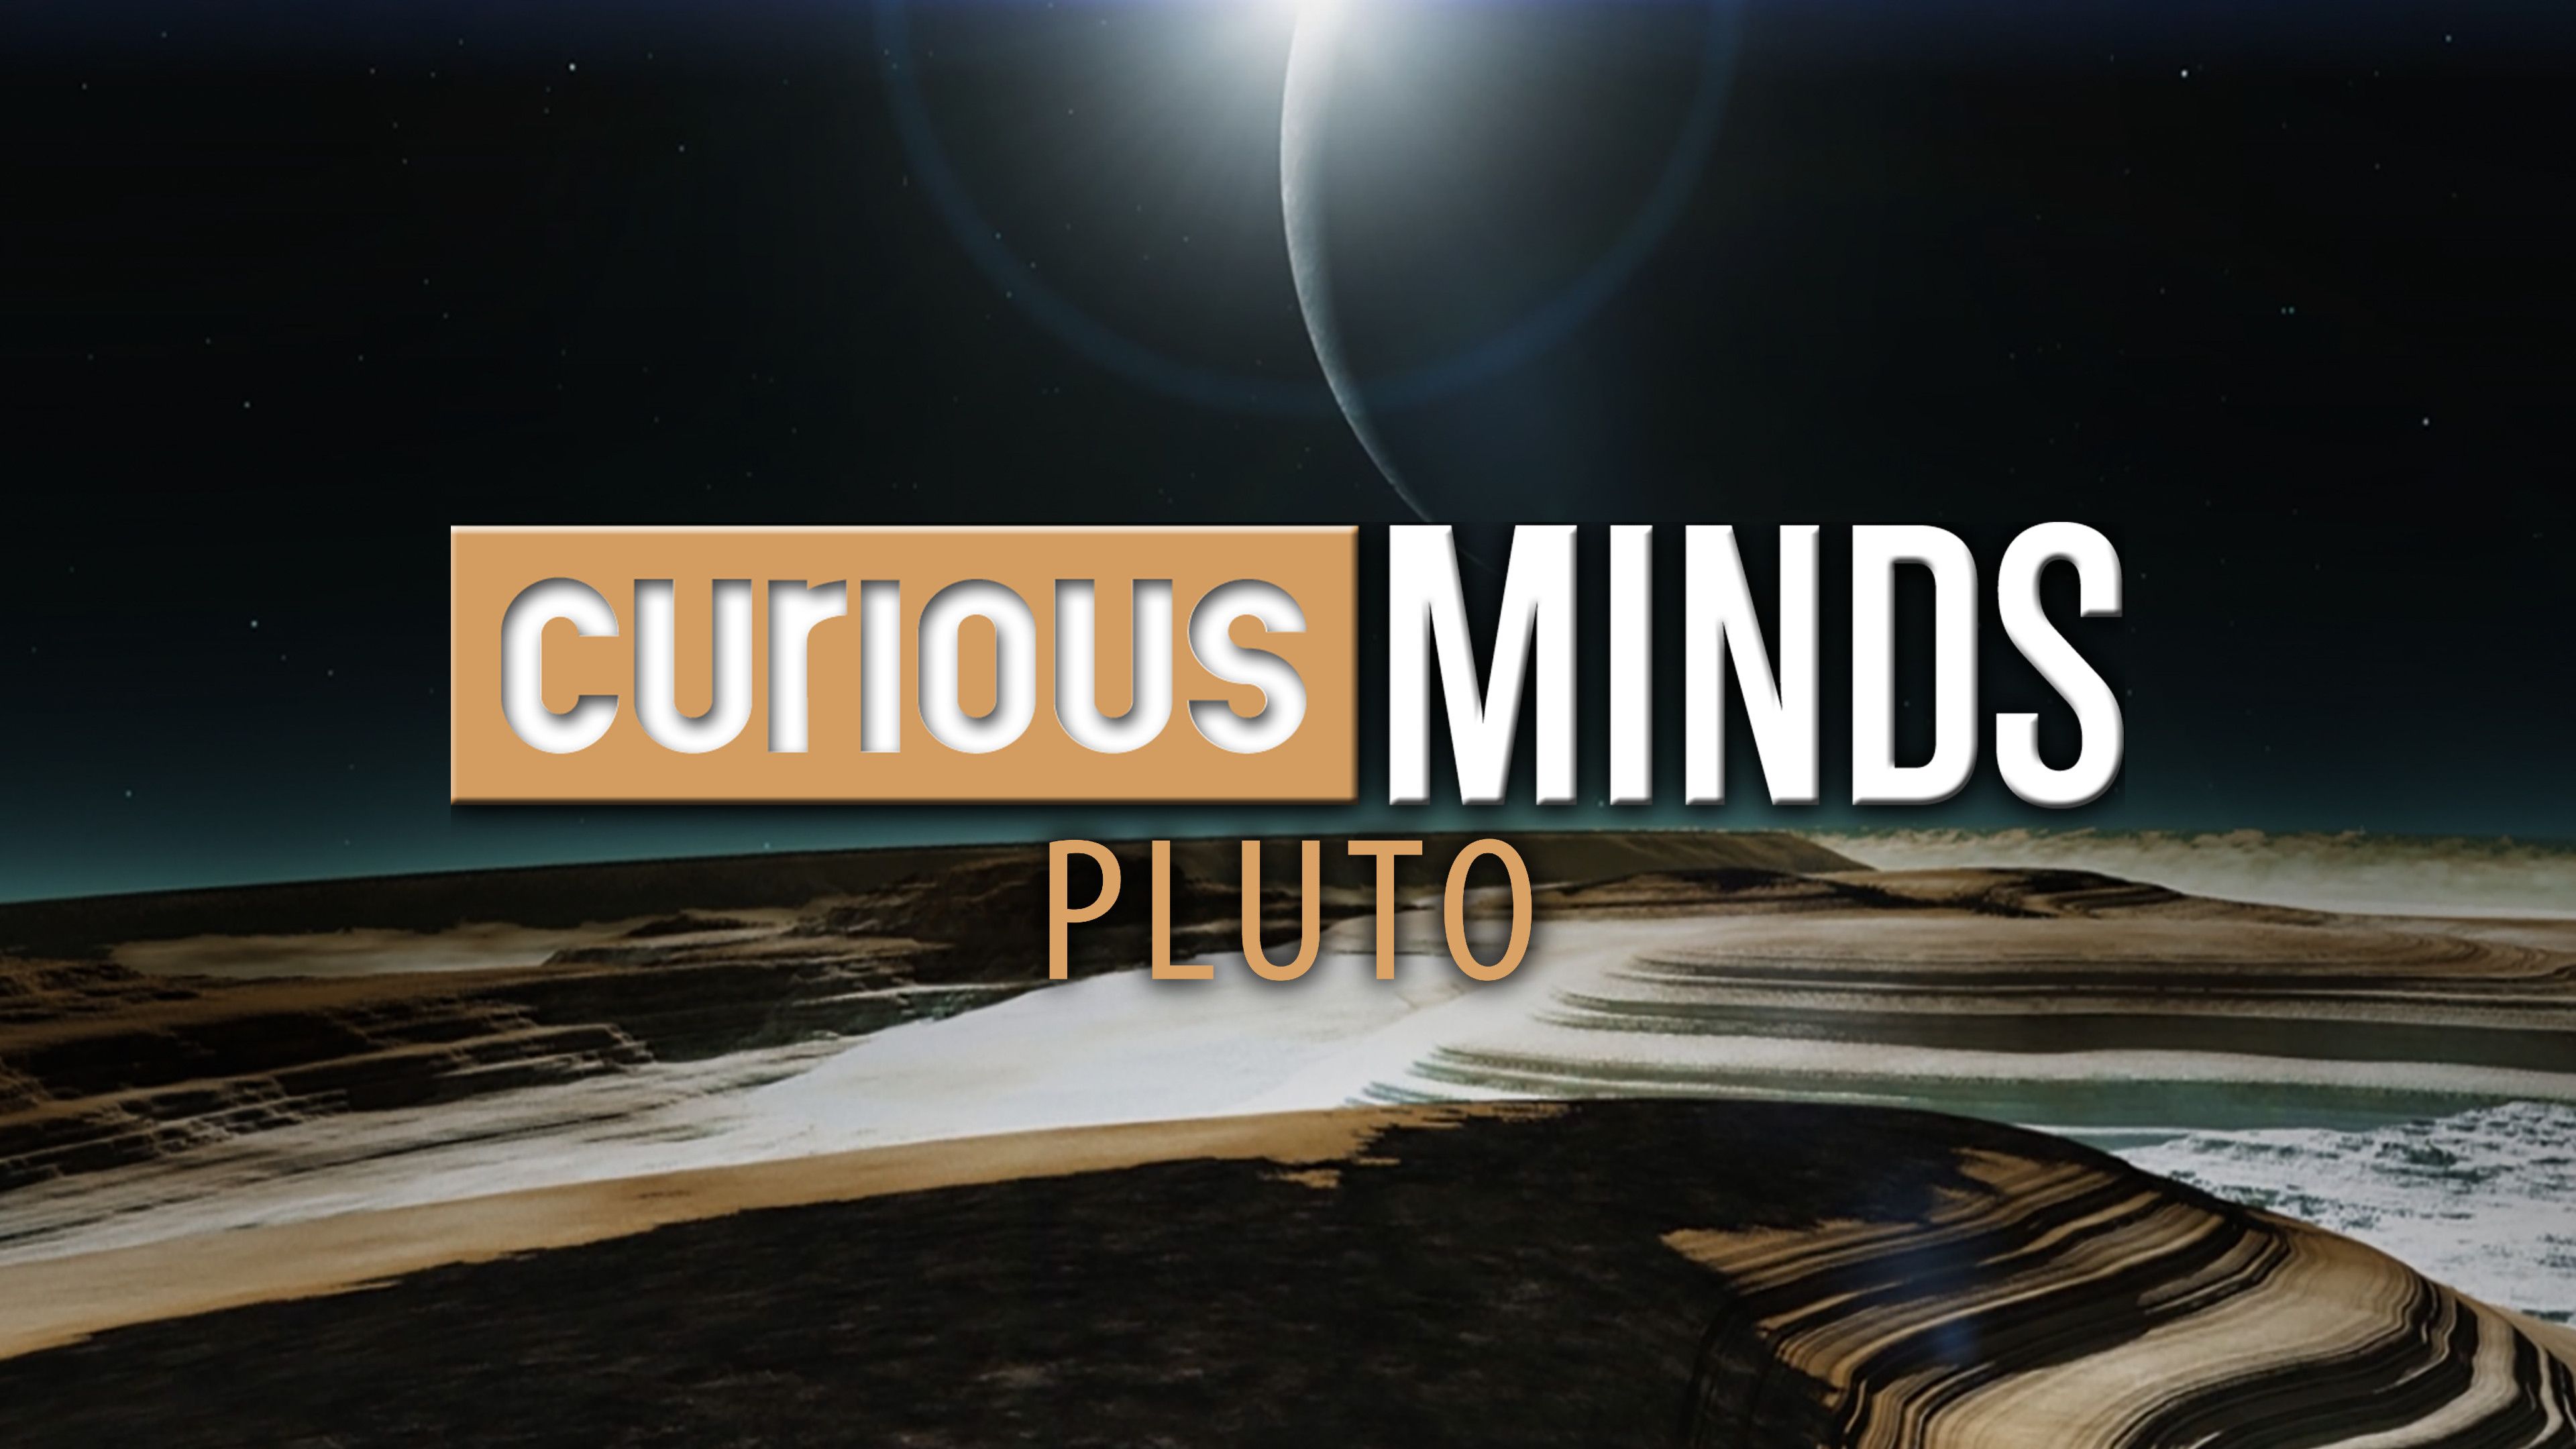 Curious Minds: Pluto